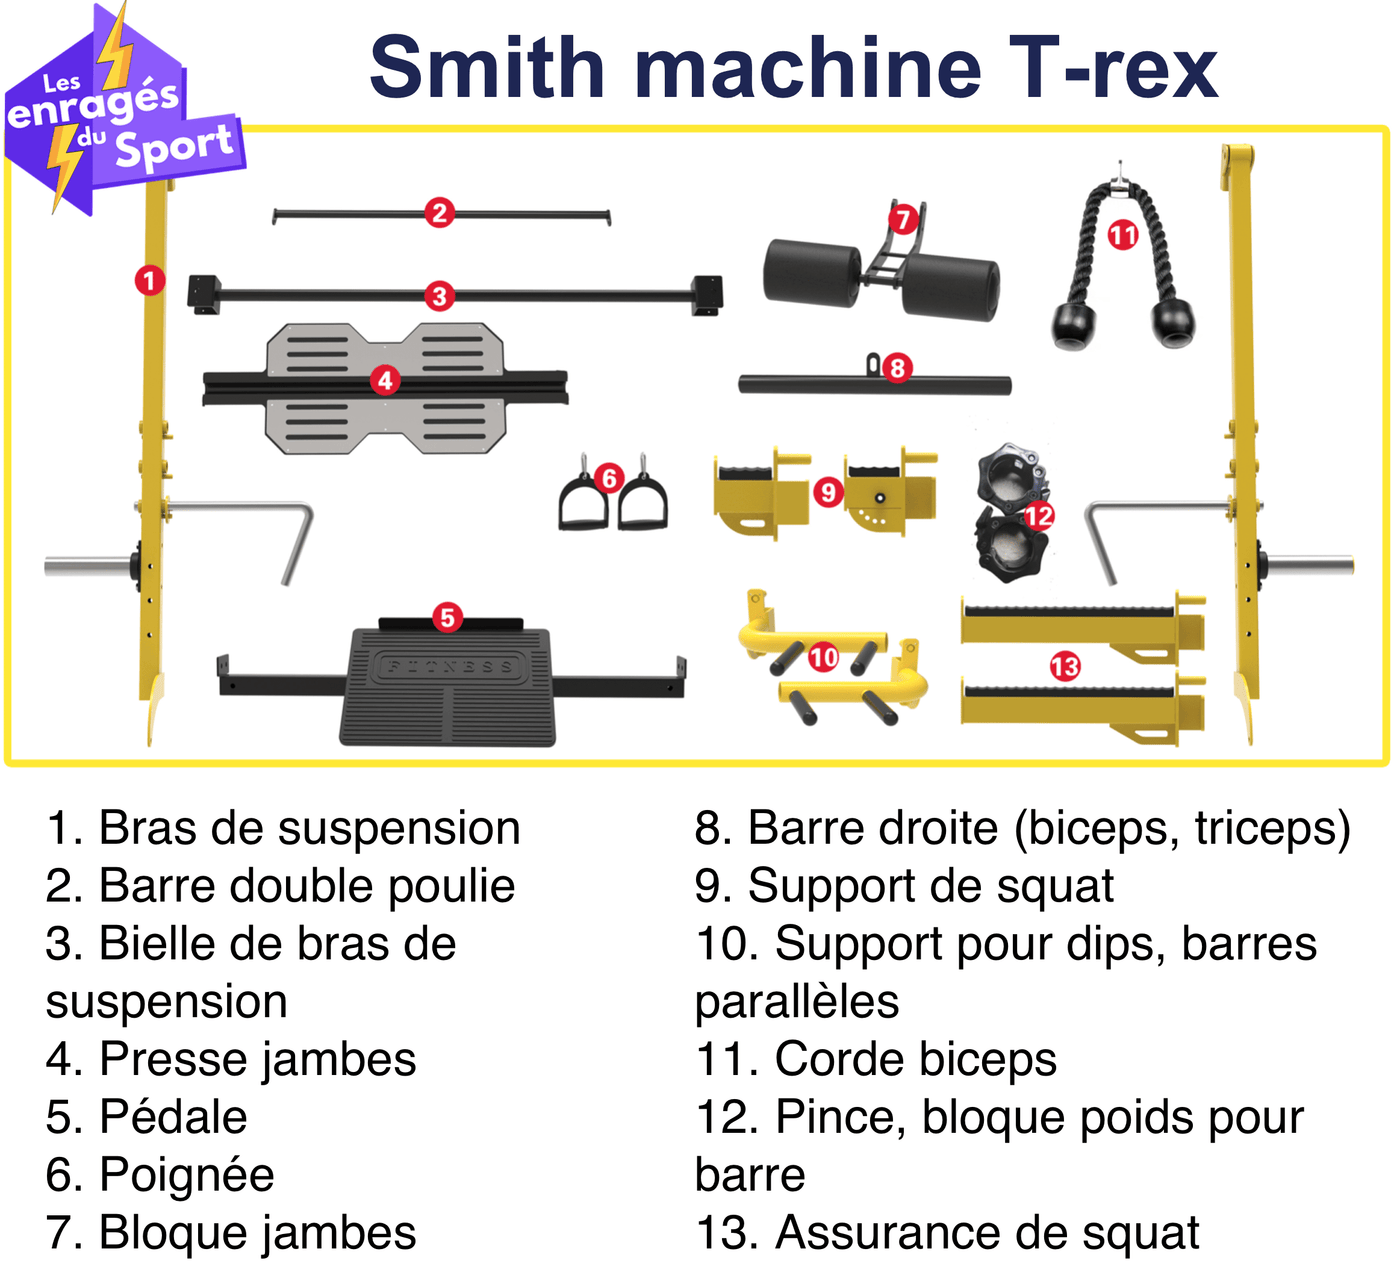 Smith machine T-REX - Les enragés du sport